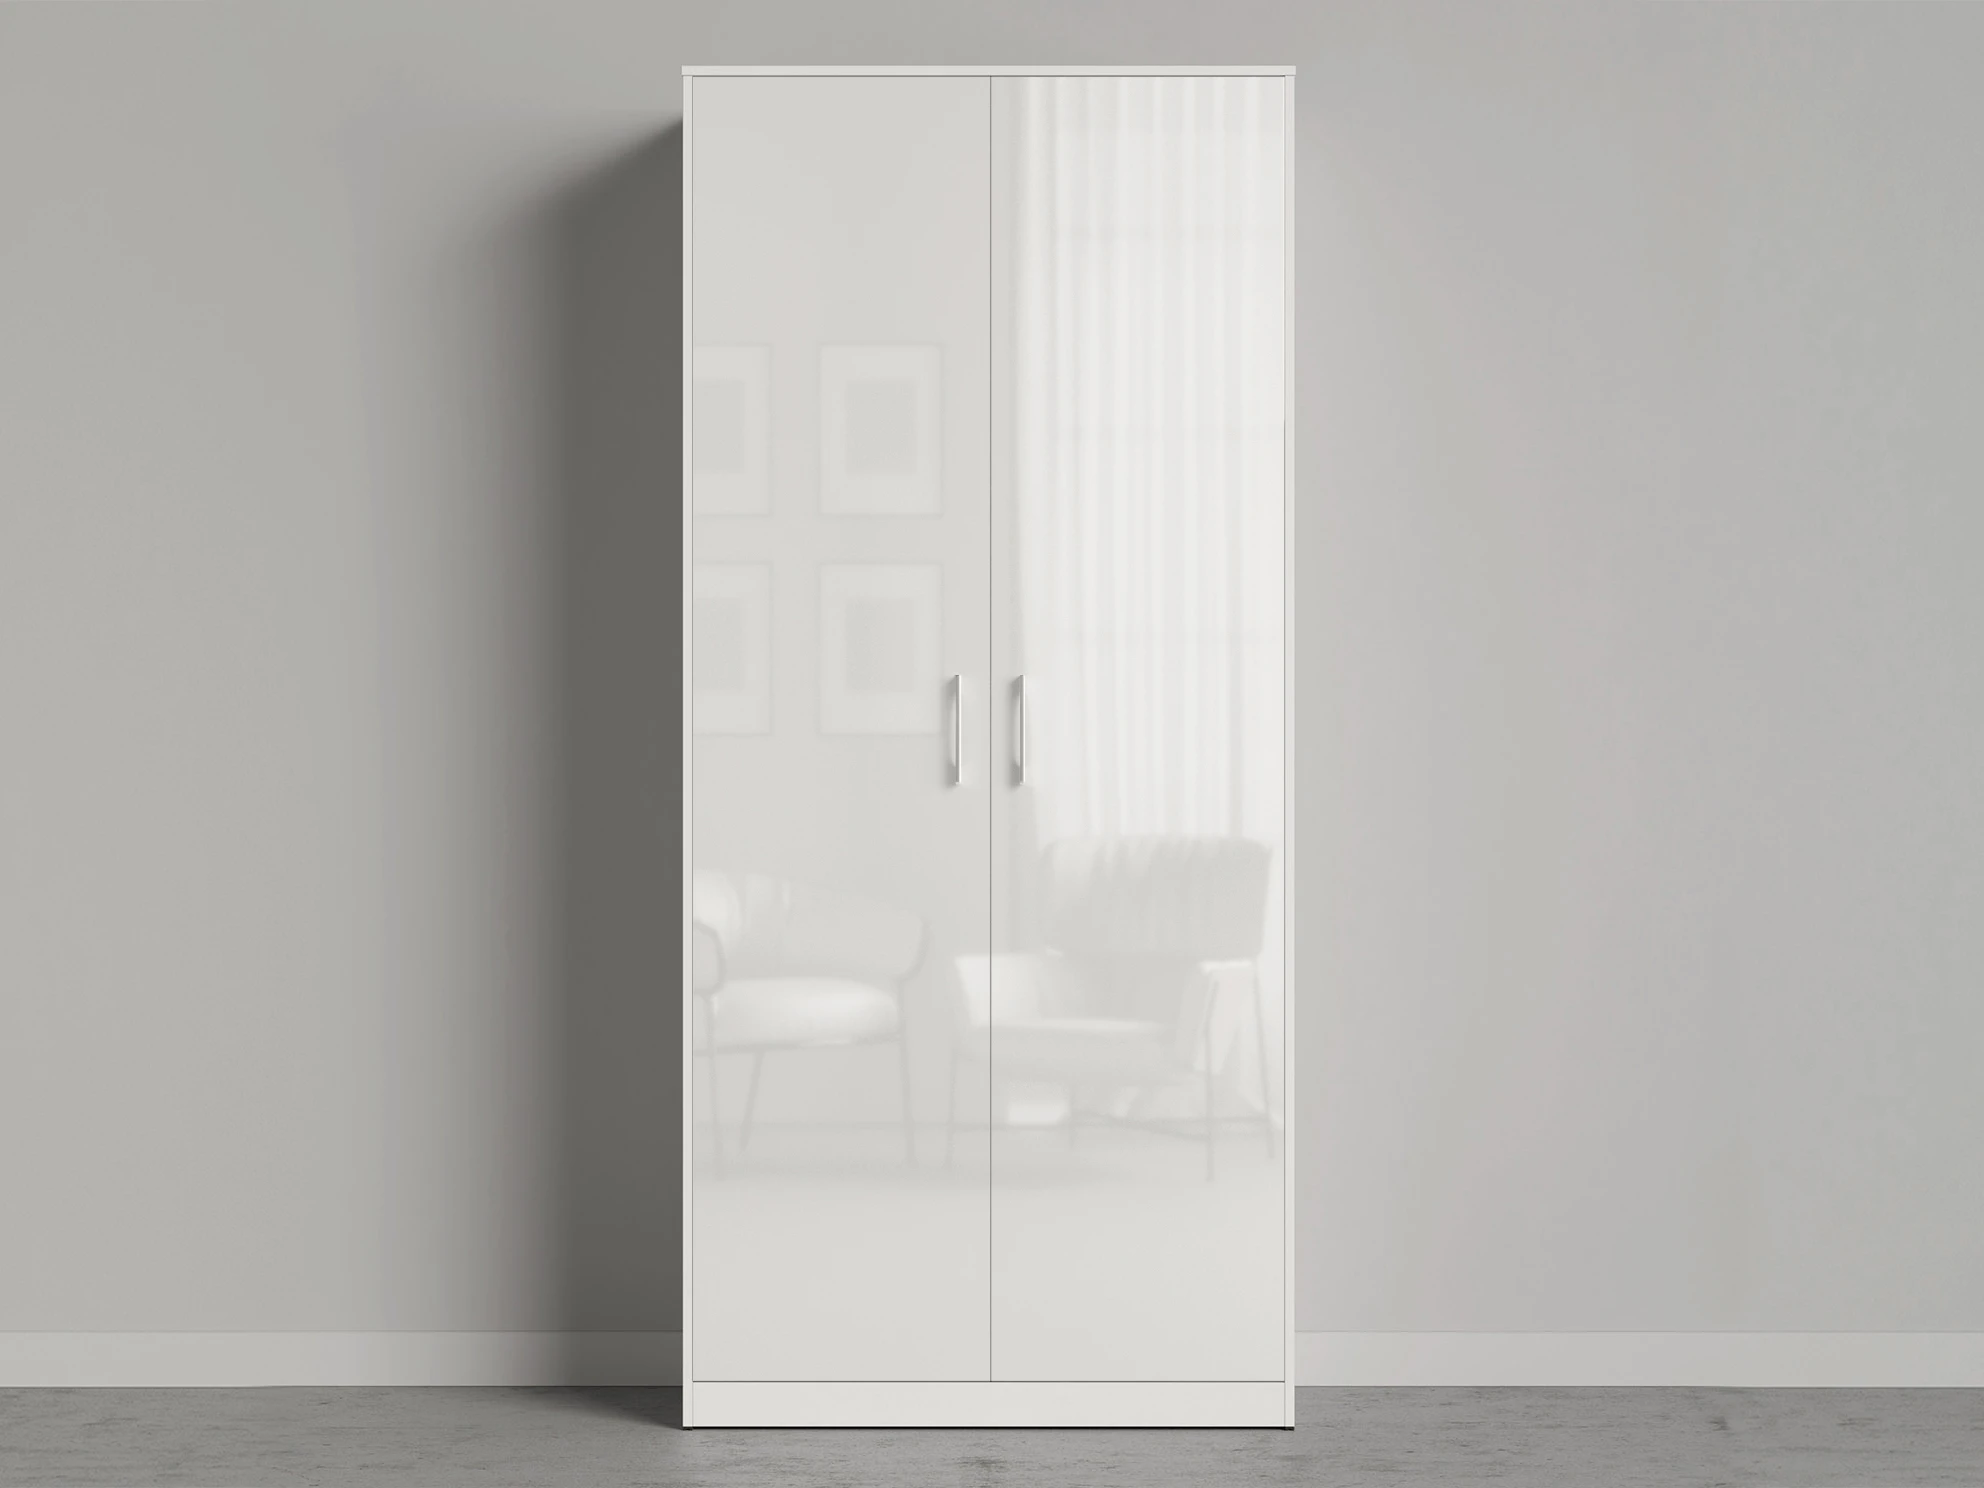 1 Closet 100x220 cm (Standard 45 cm depth) White / White Gloss